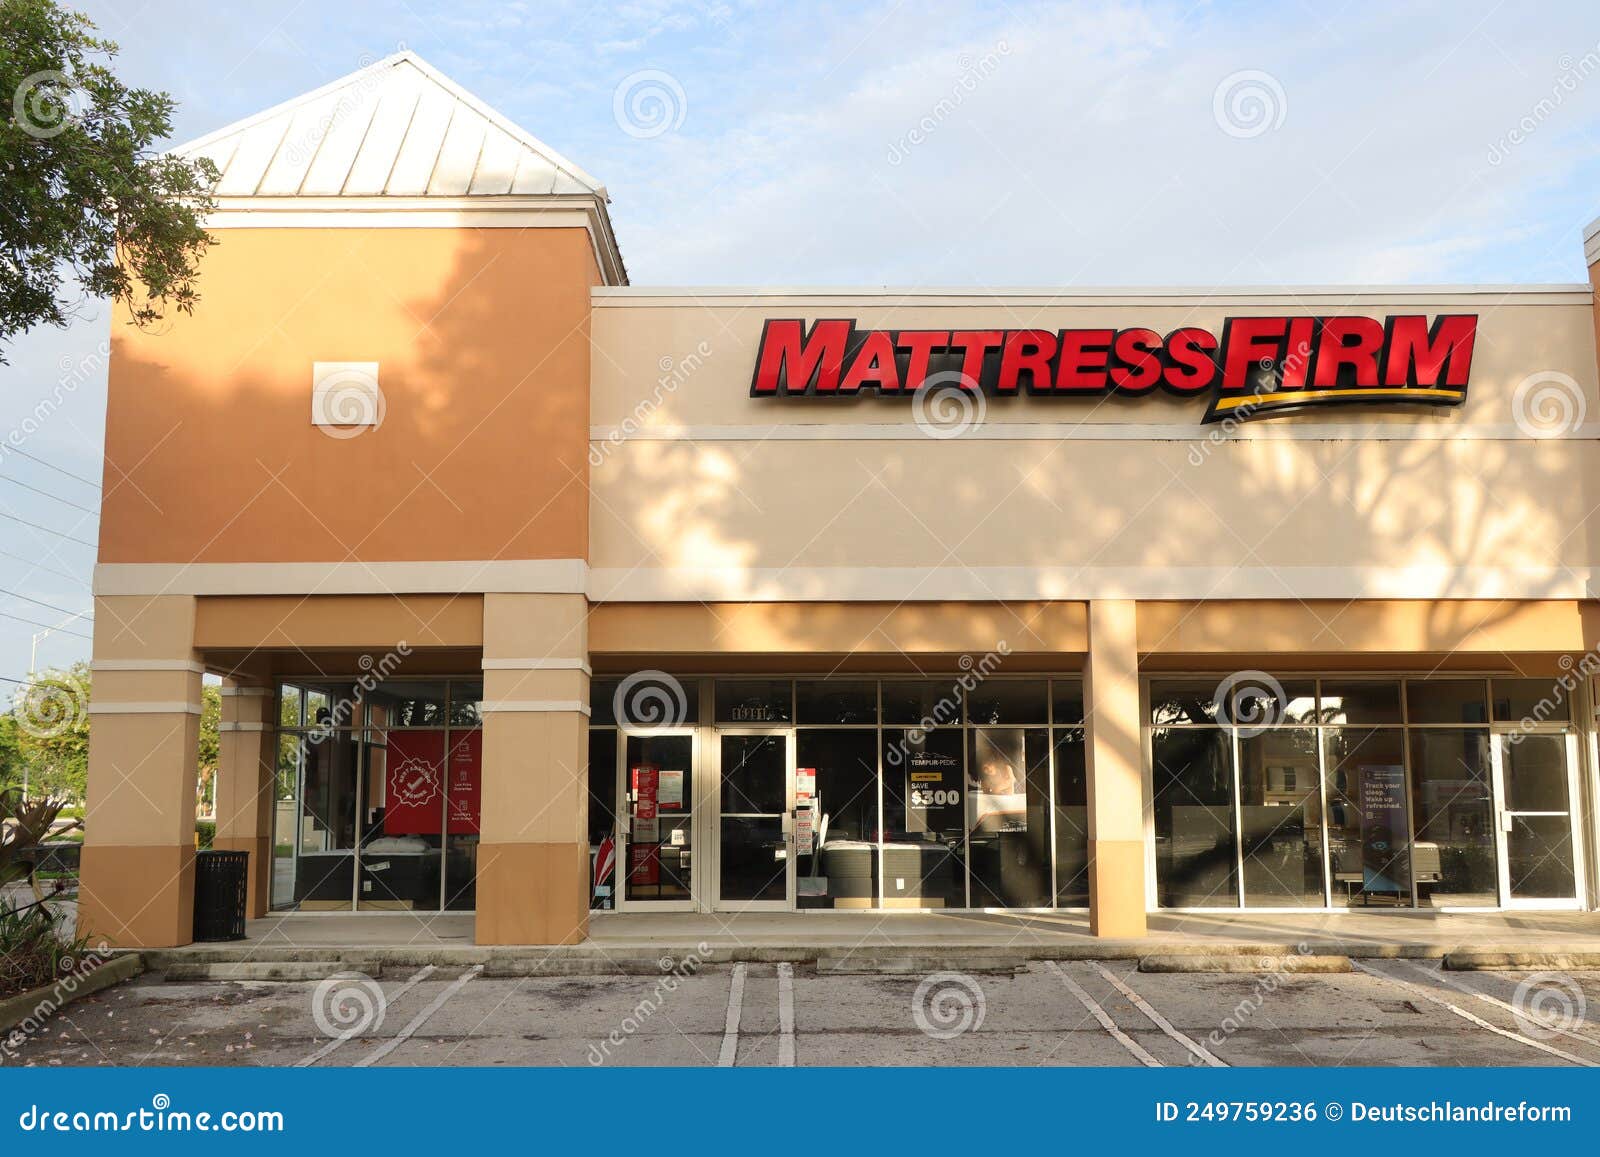 mattress store in miami florida